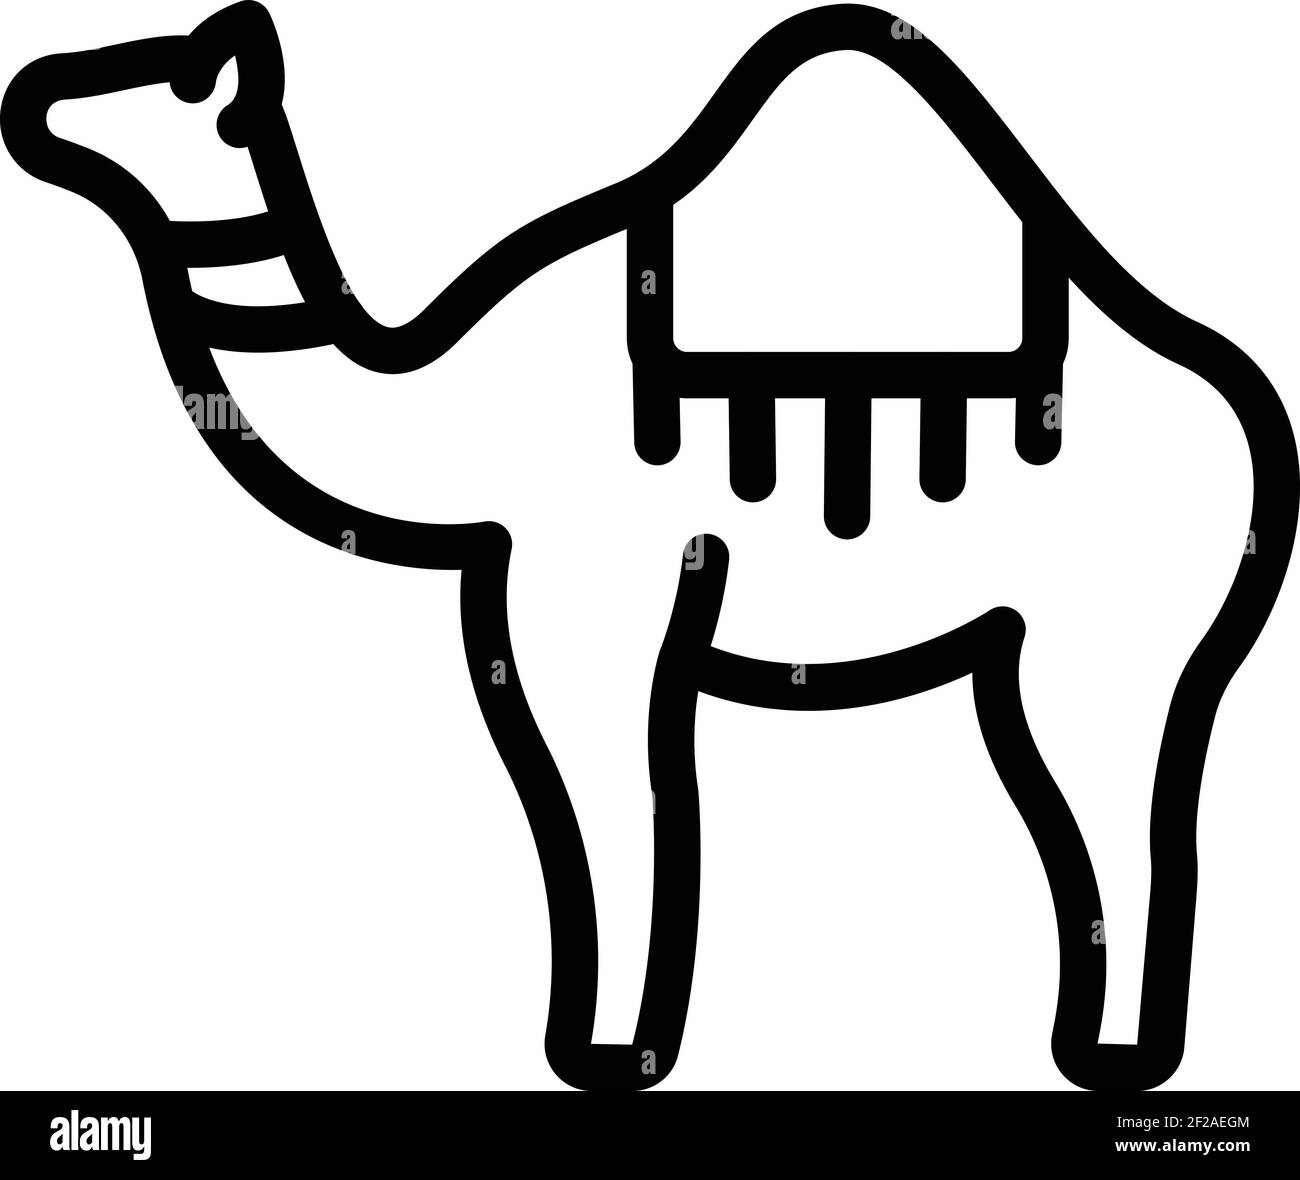 Kamelsymbol. Umriss Kamel Vektor-Symbol für Web-Design isoliert auf weißem Hintergrund Stock Vektor